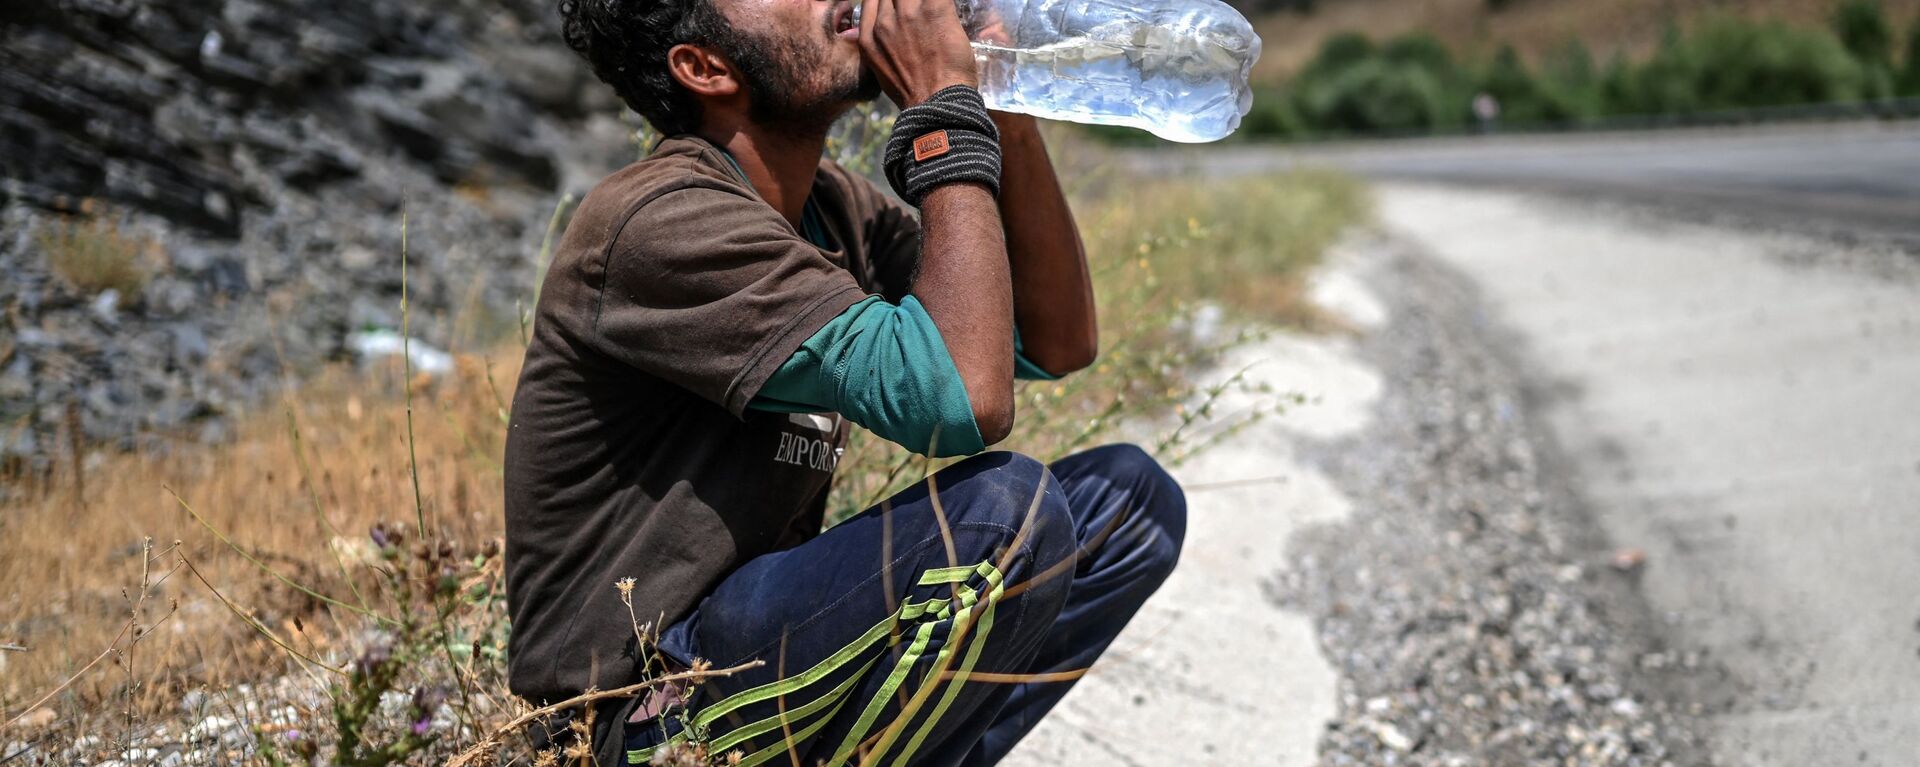 Афганский мигрант пьет воду в Татване - Sputnik Тоҷикистон, 1920, 06.06.2022